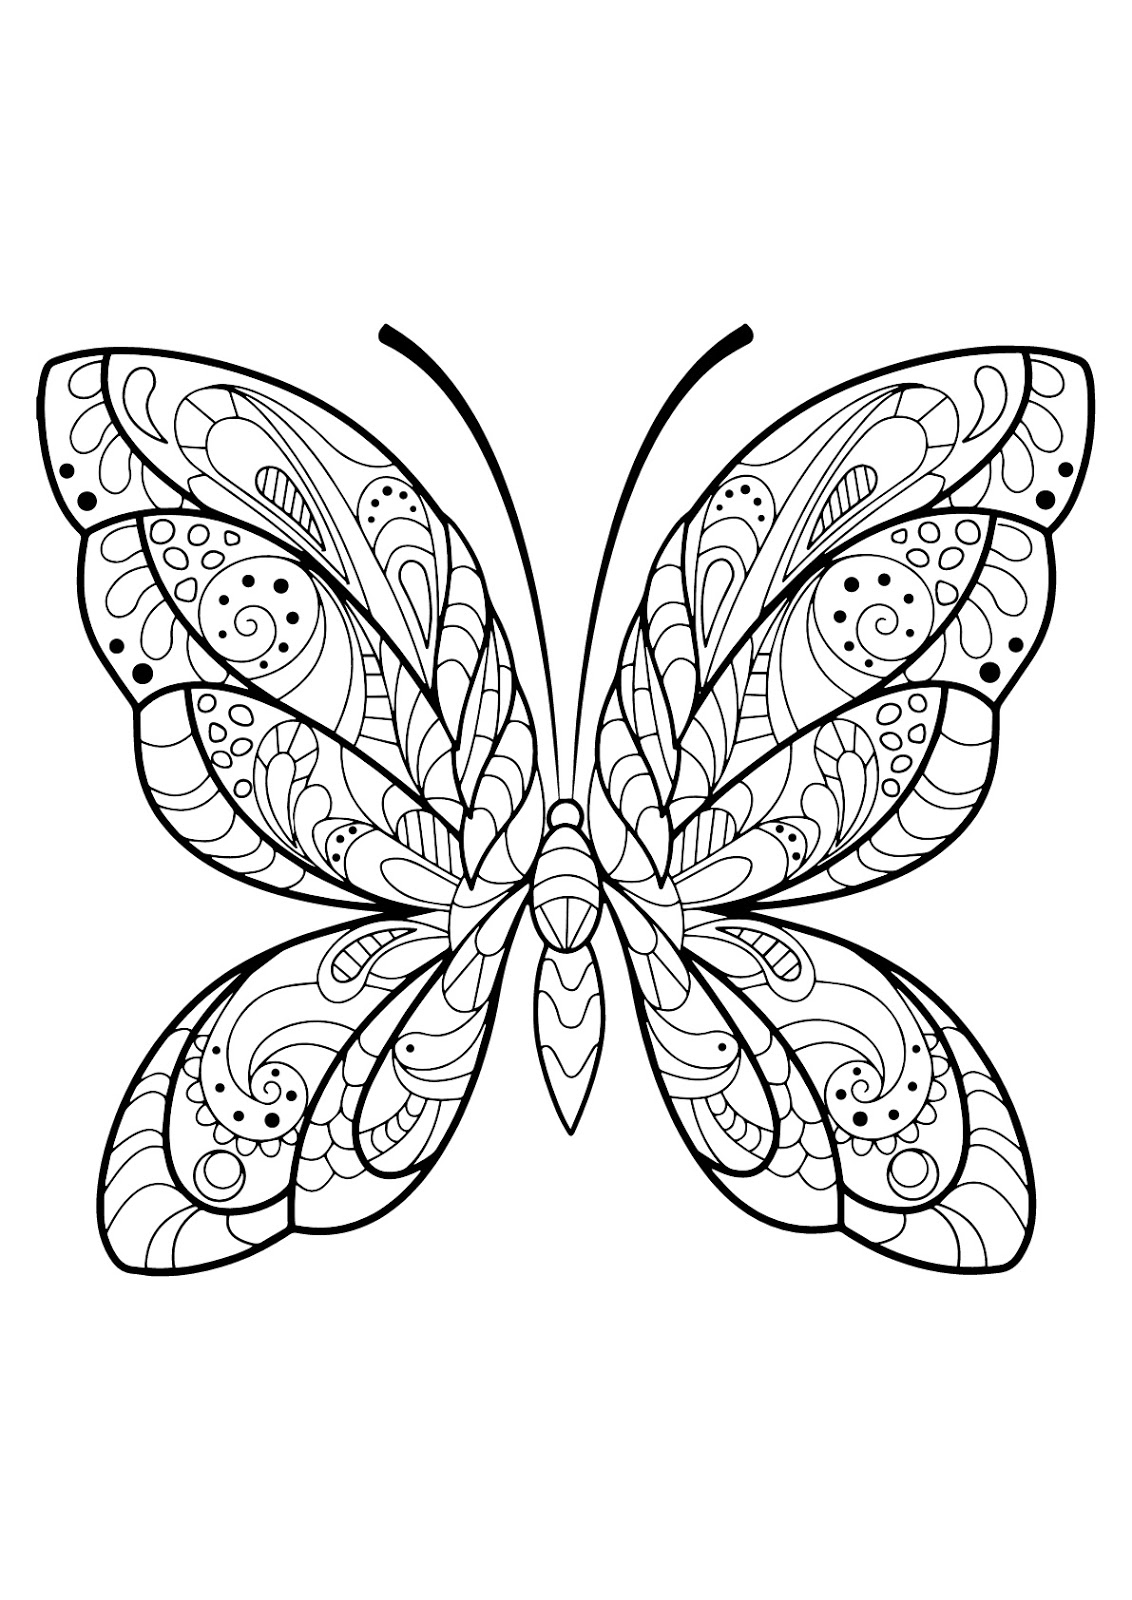 Tranh tô màu con bướm họa tiết xoắn và lượn